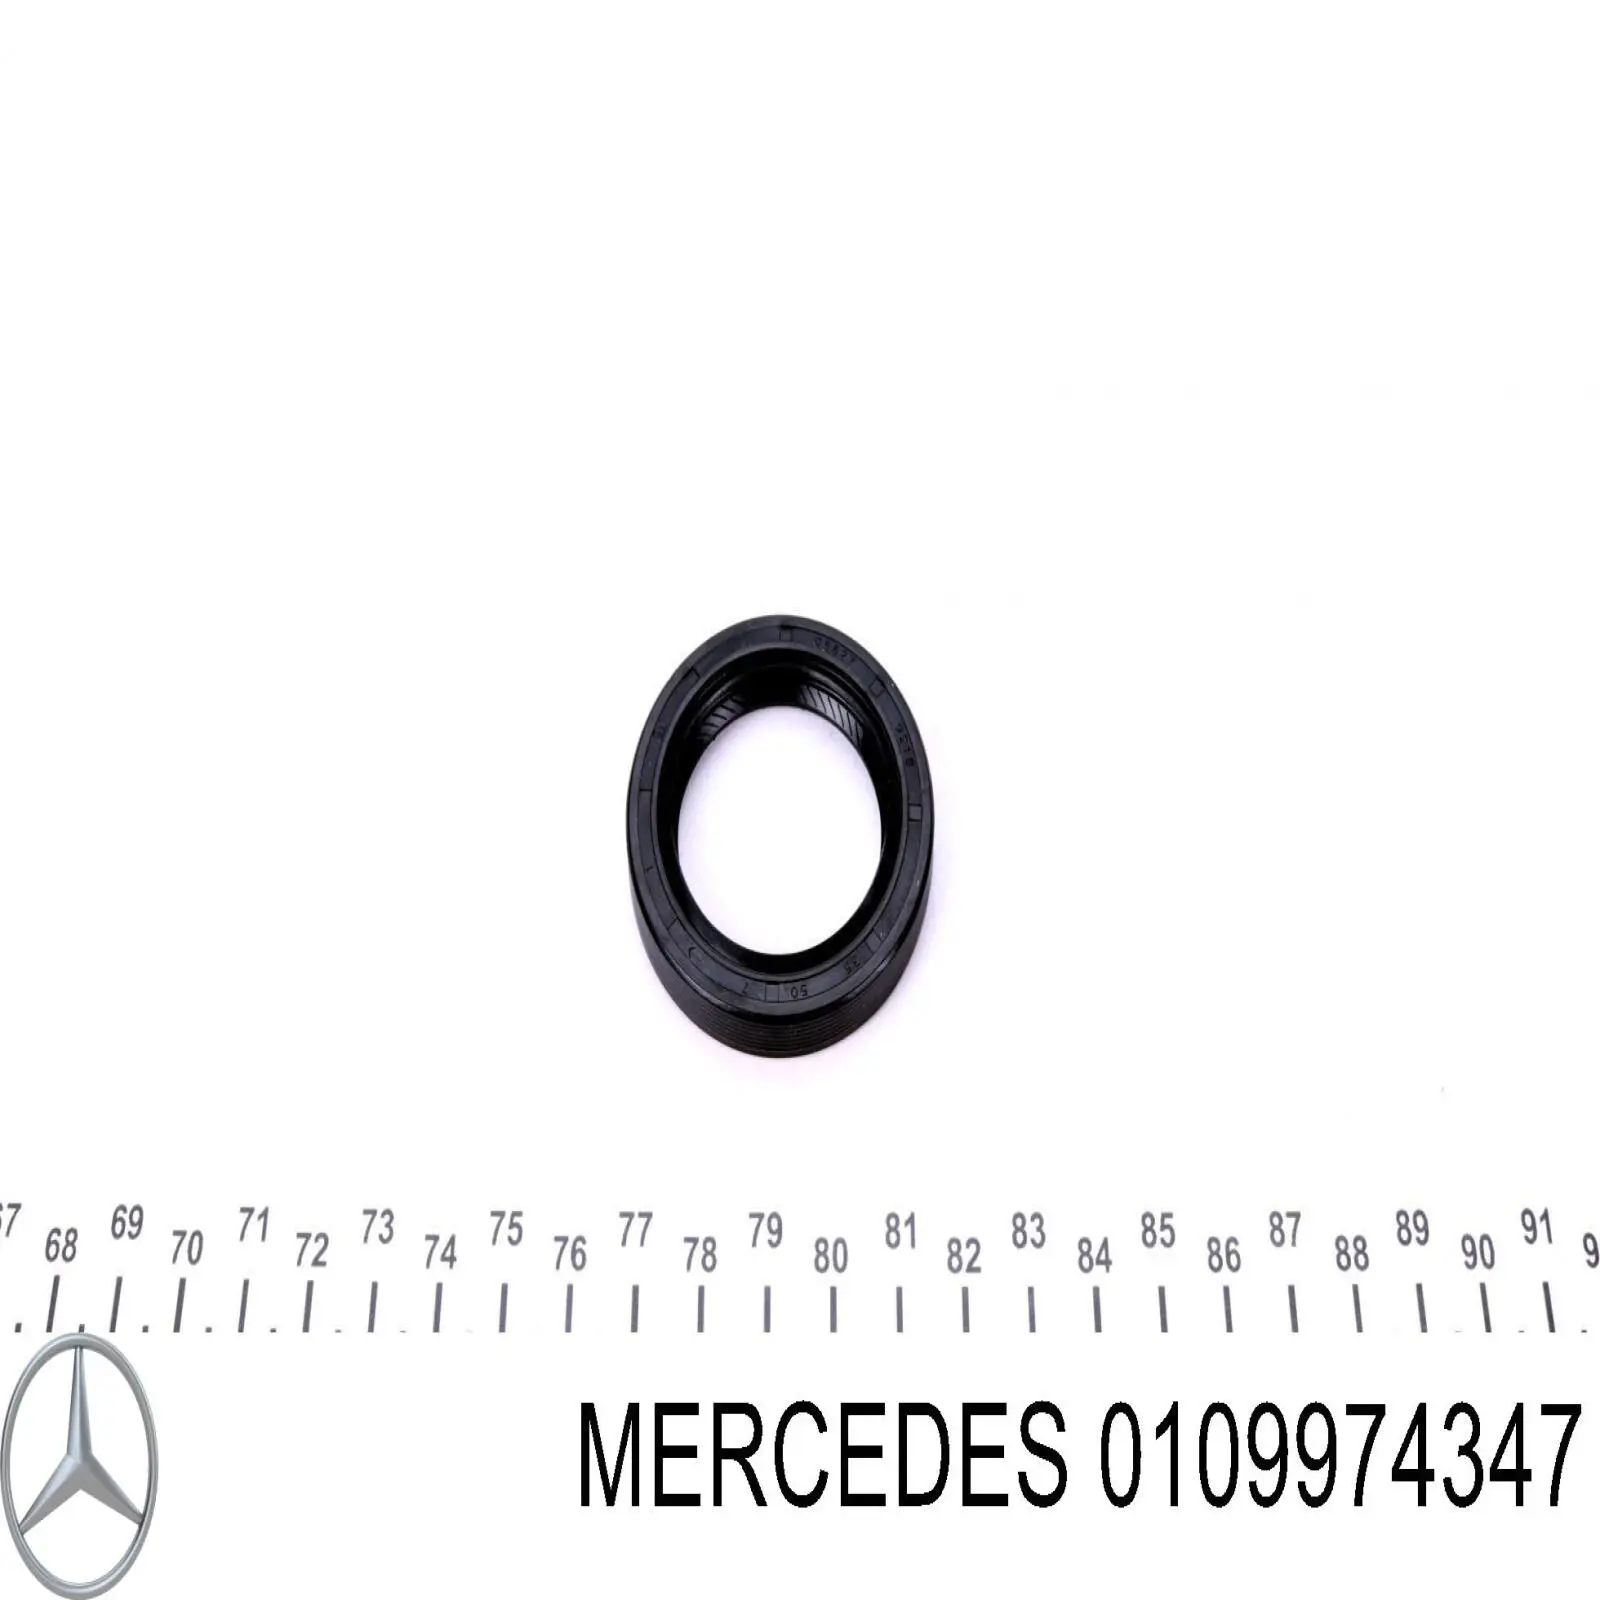 0109974347 Mercedes anillo reten caja de cambios